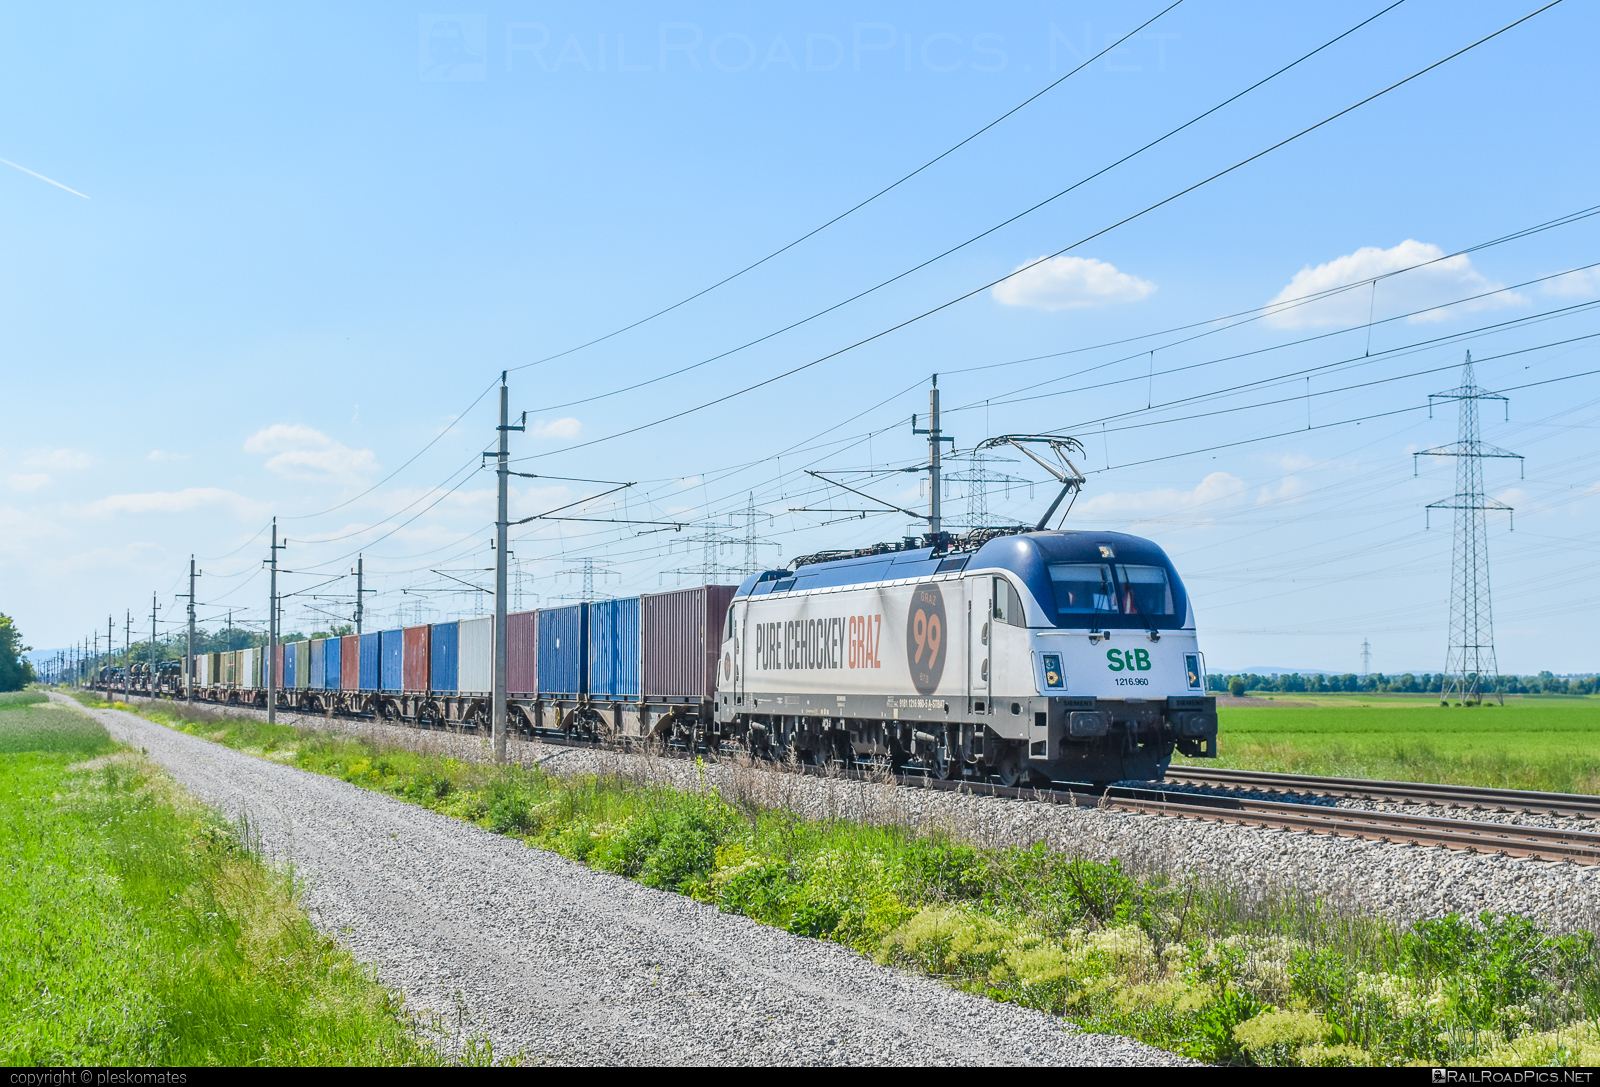 Siemens ES 64 U4 - 1216 960 operated by Steiermarkbahn Transport & Logistik GmbH #container #es64 #es64u4 #eurosprinter #flatwagon #siemens #siemensEs64 #siemensEs64u4 #siemenstaurus #stb #steiermarkbahn #taurus #tauruslocomotive